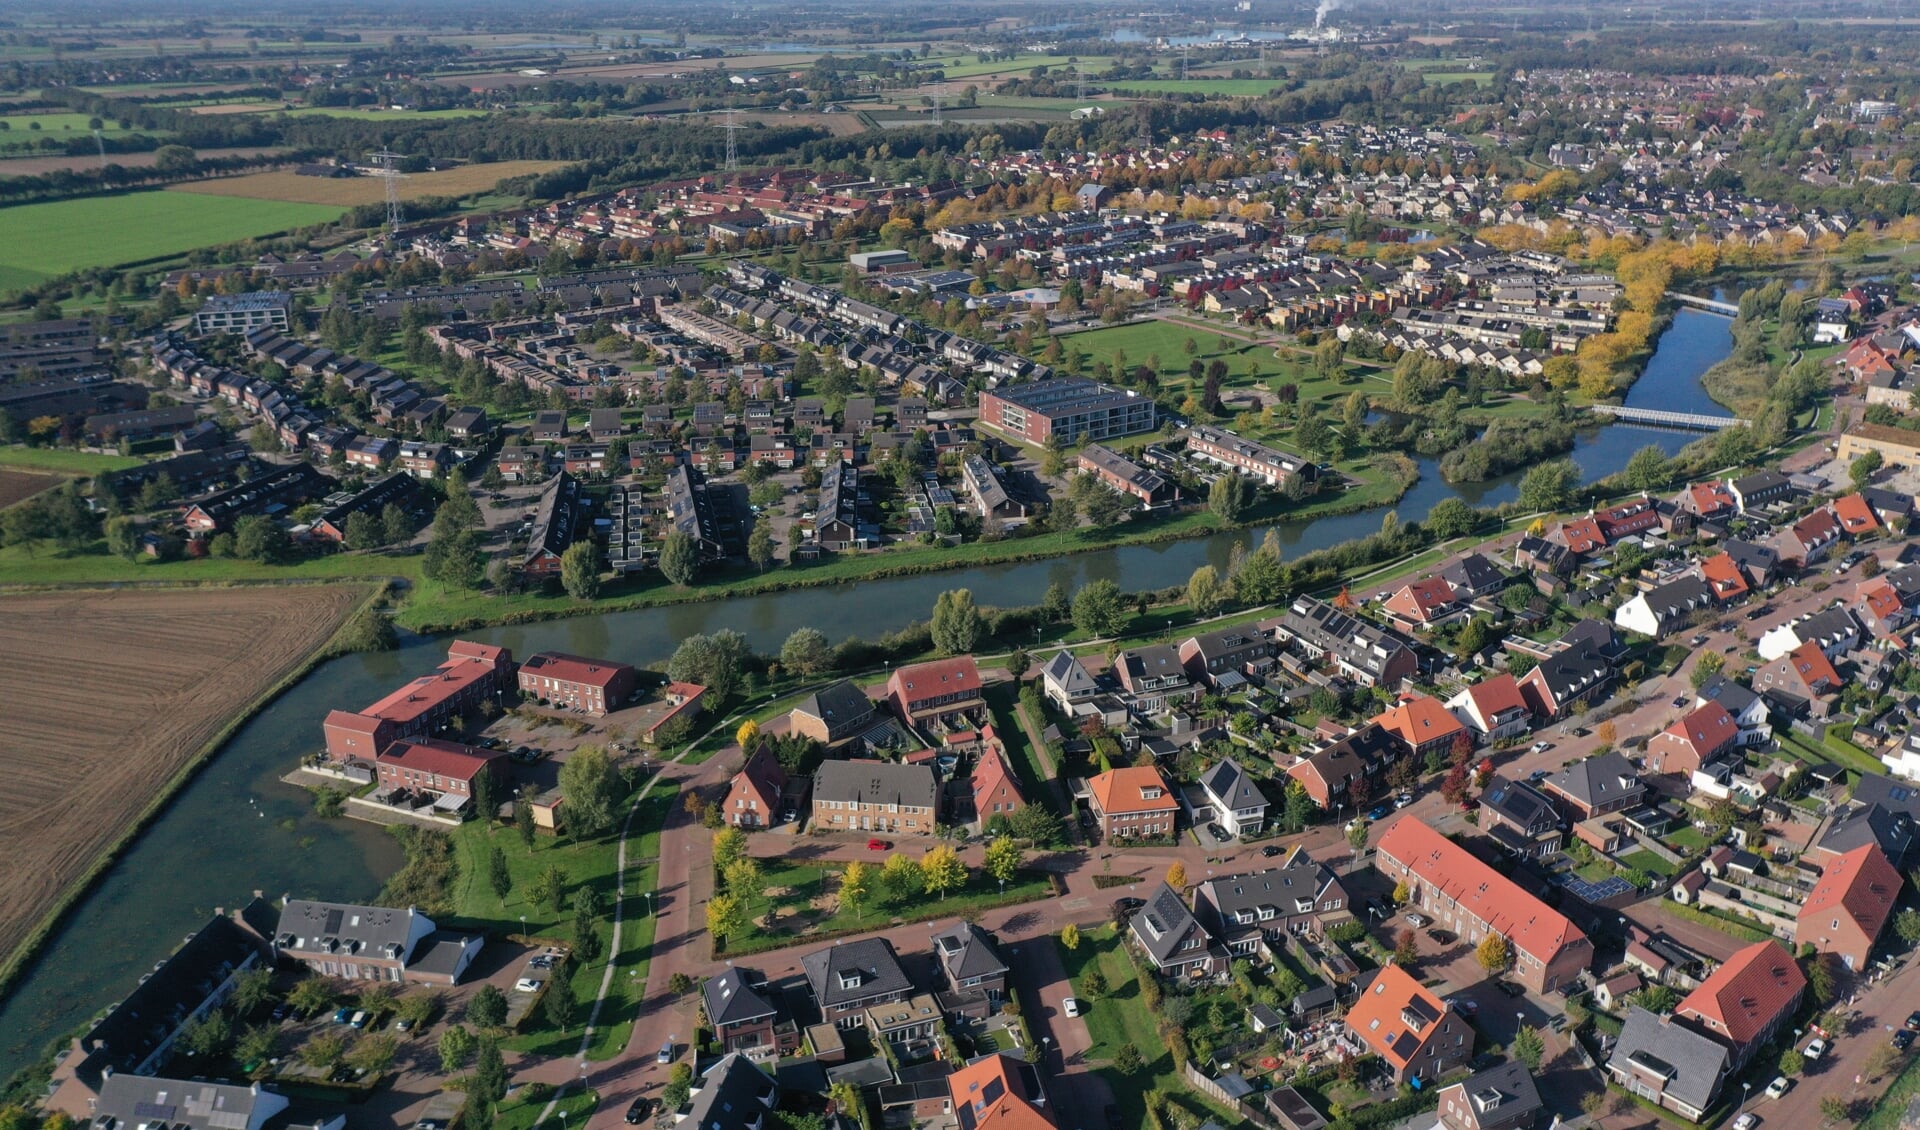 De straatnamenwijk Huurlingsedam en cijferwijk Kerkeveld vanuit de lucht